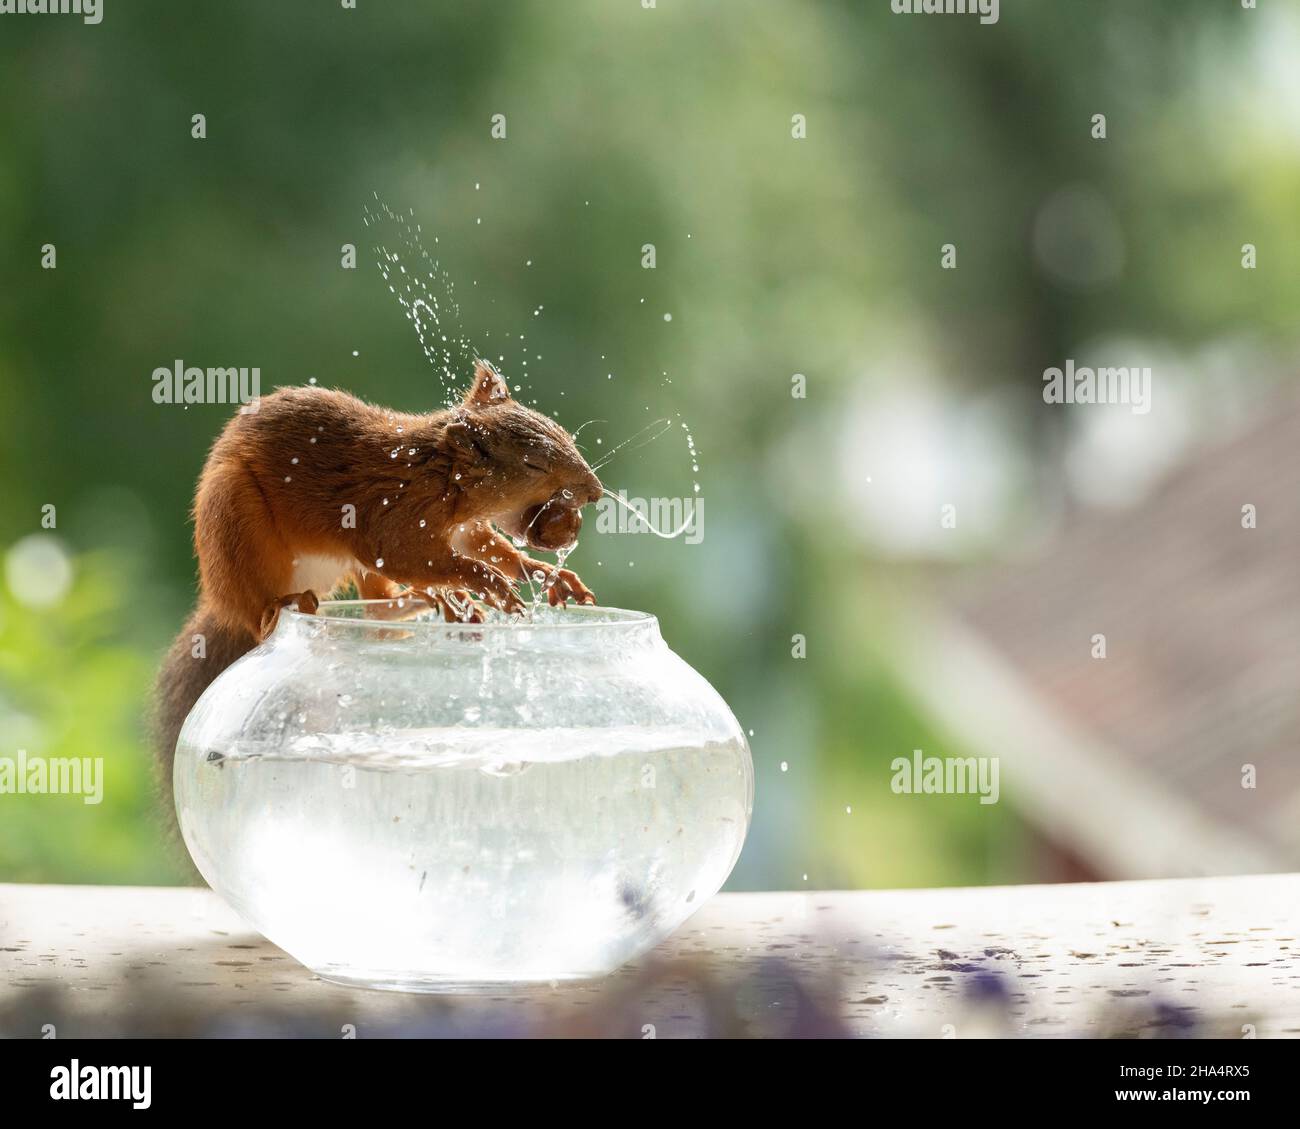 Rotes Eichhörnchen schüttelt Wasser aus einer Fischschale Stockfoto